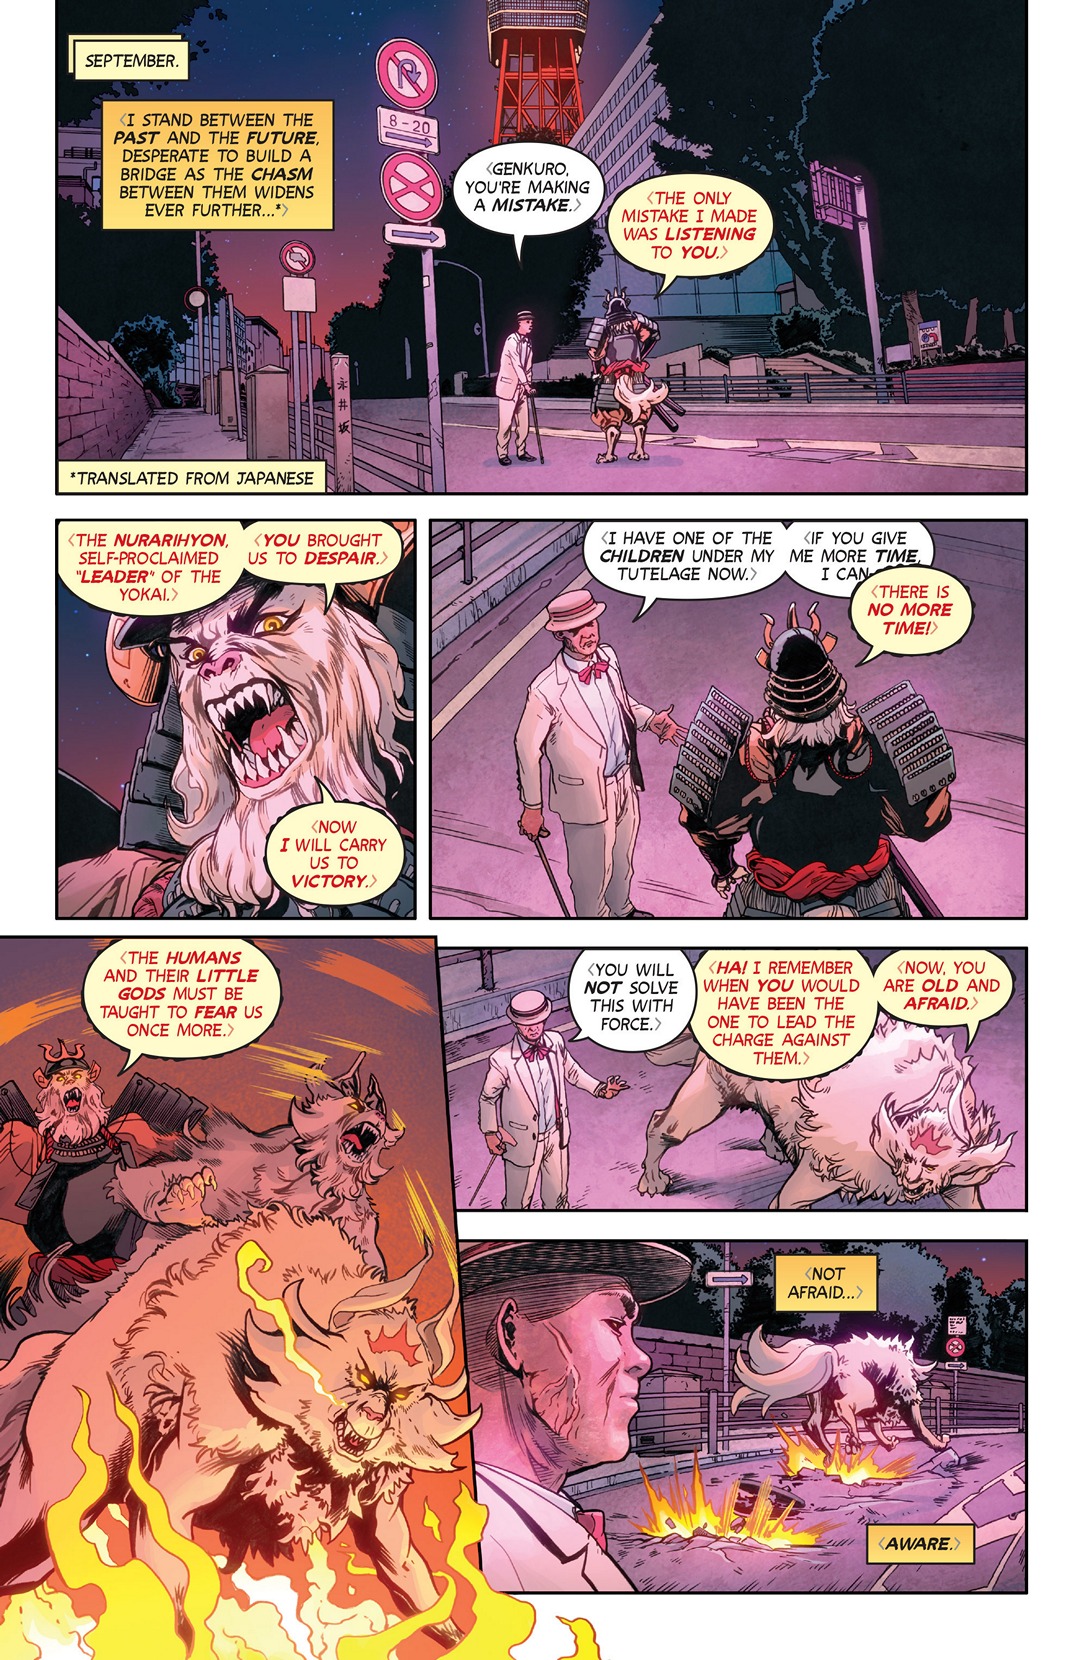 Wayward (2014-): Chapter 13 - Page 3